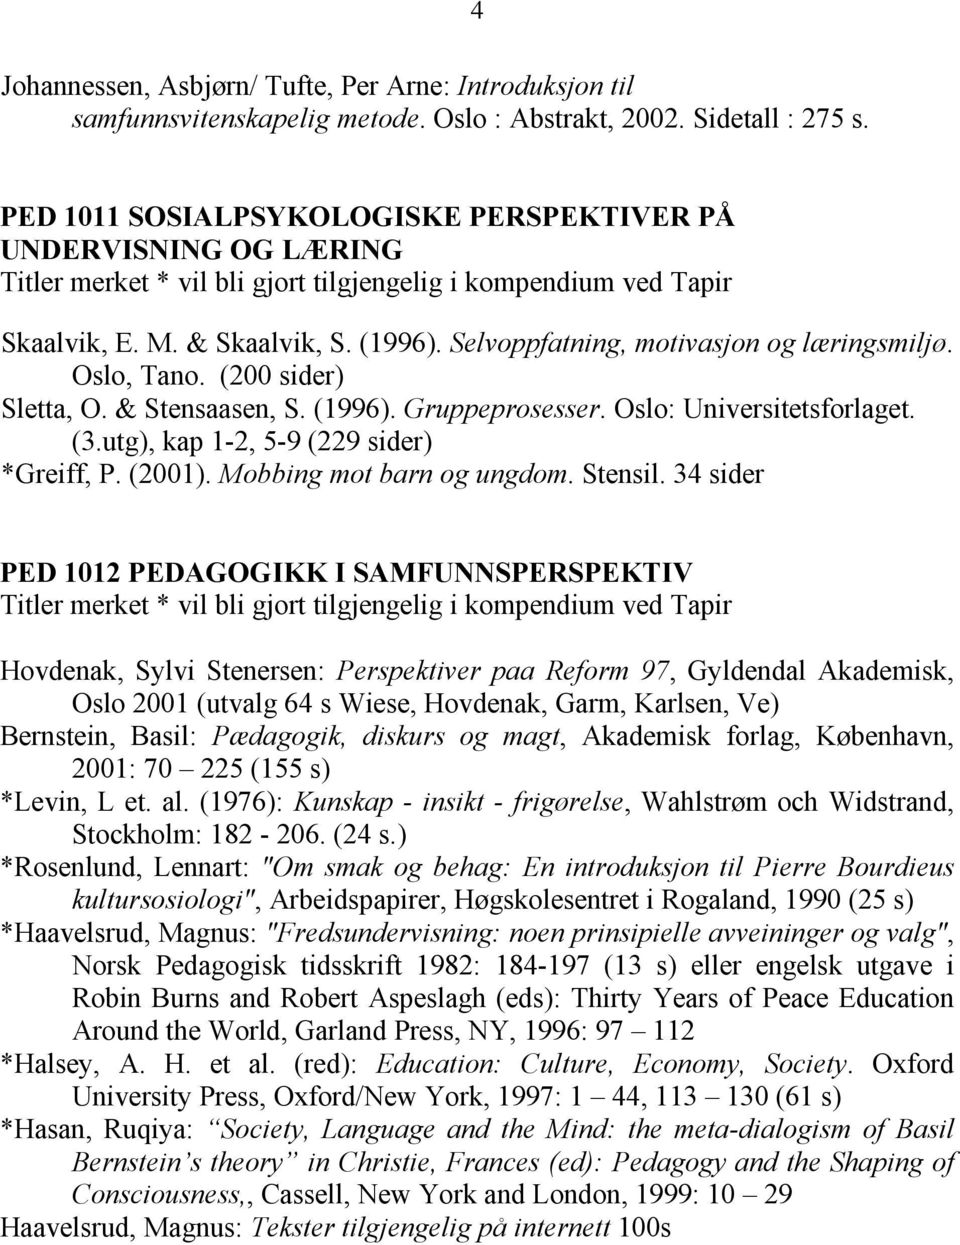 Selvoppfatning, motivasjon og læringsmiljø. Oslo, Tano. (200 sider) Sletta, O. & Stensaasen, S. (1996). Gruppeprosesser. Oslo: Universitetsforlaget. (3.utg), kap 1-2, 5-9 (229 sider) *Greiff, P.